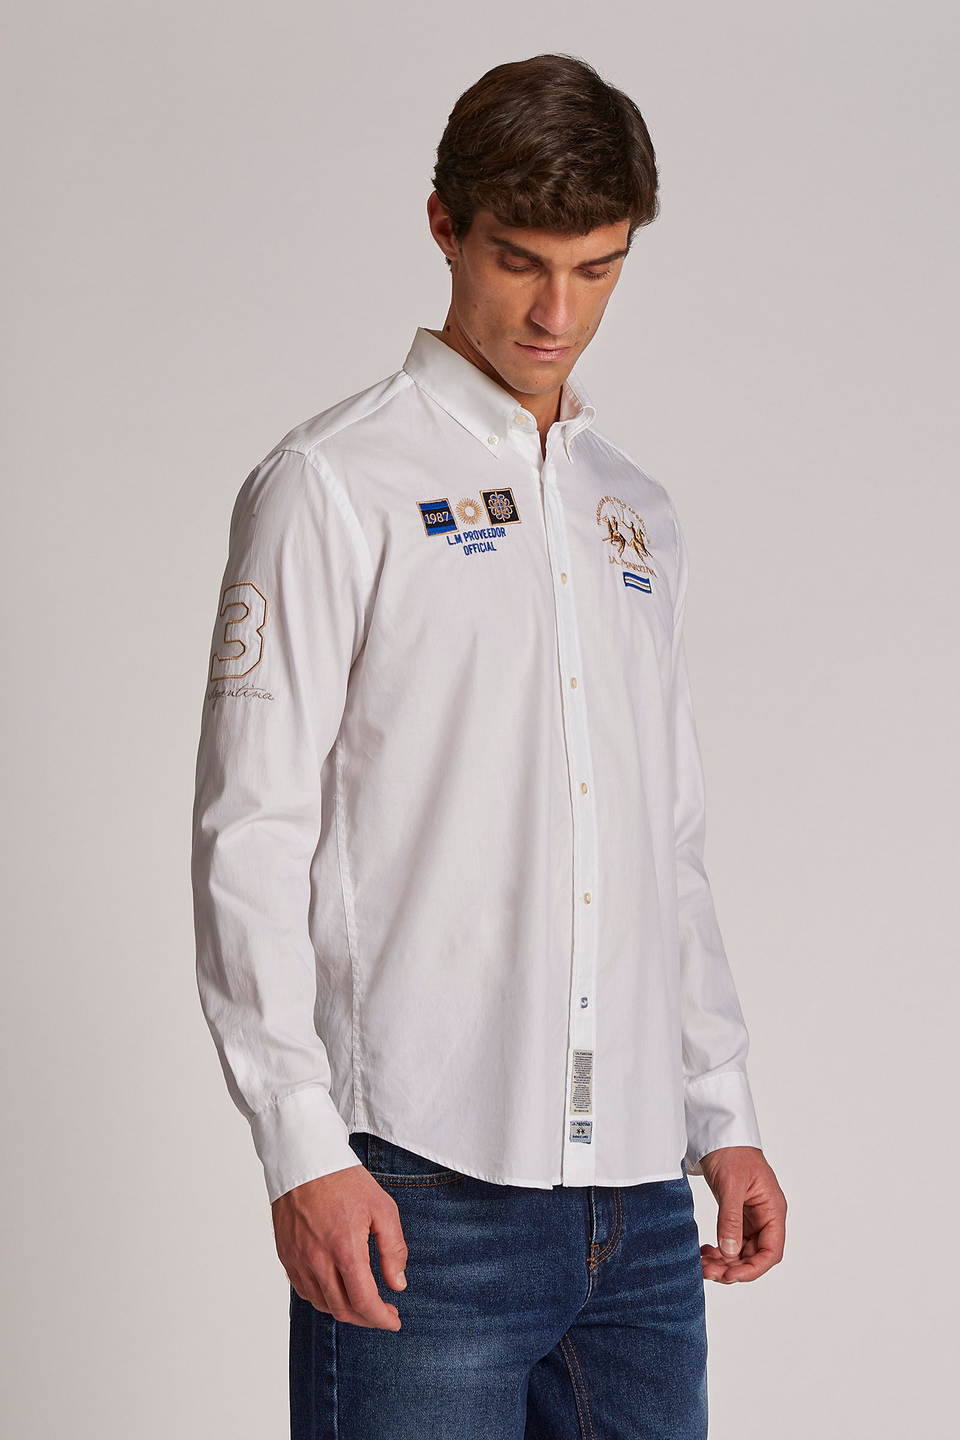 Camisa de hombre de algodón, manga larga, corte regular | La Martina - Official Online Shop